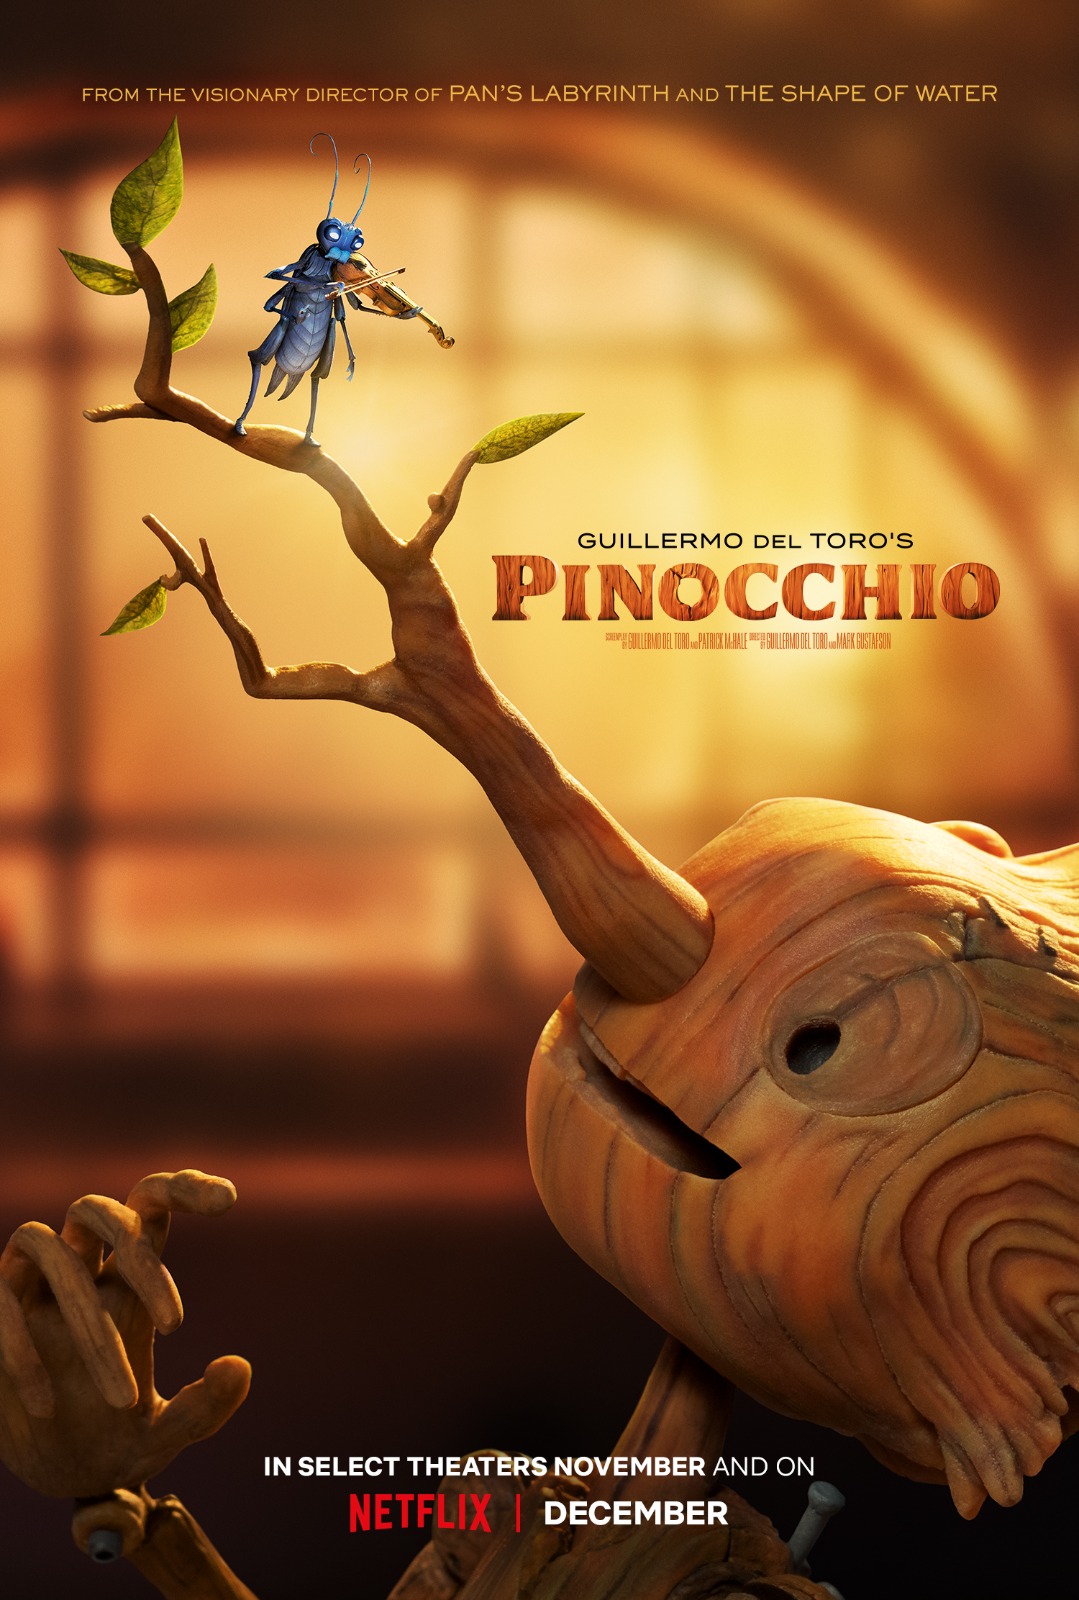 Guillermo del Toro's Pinocchio (a).jpg